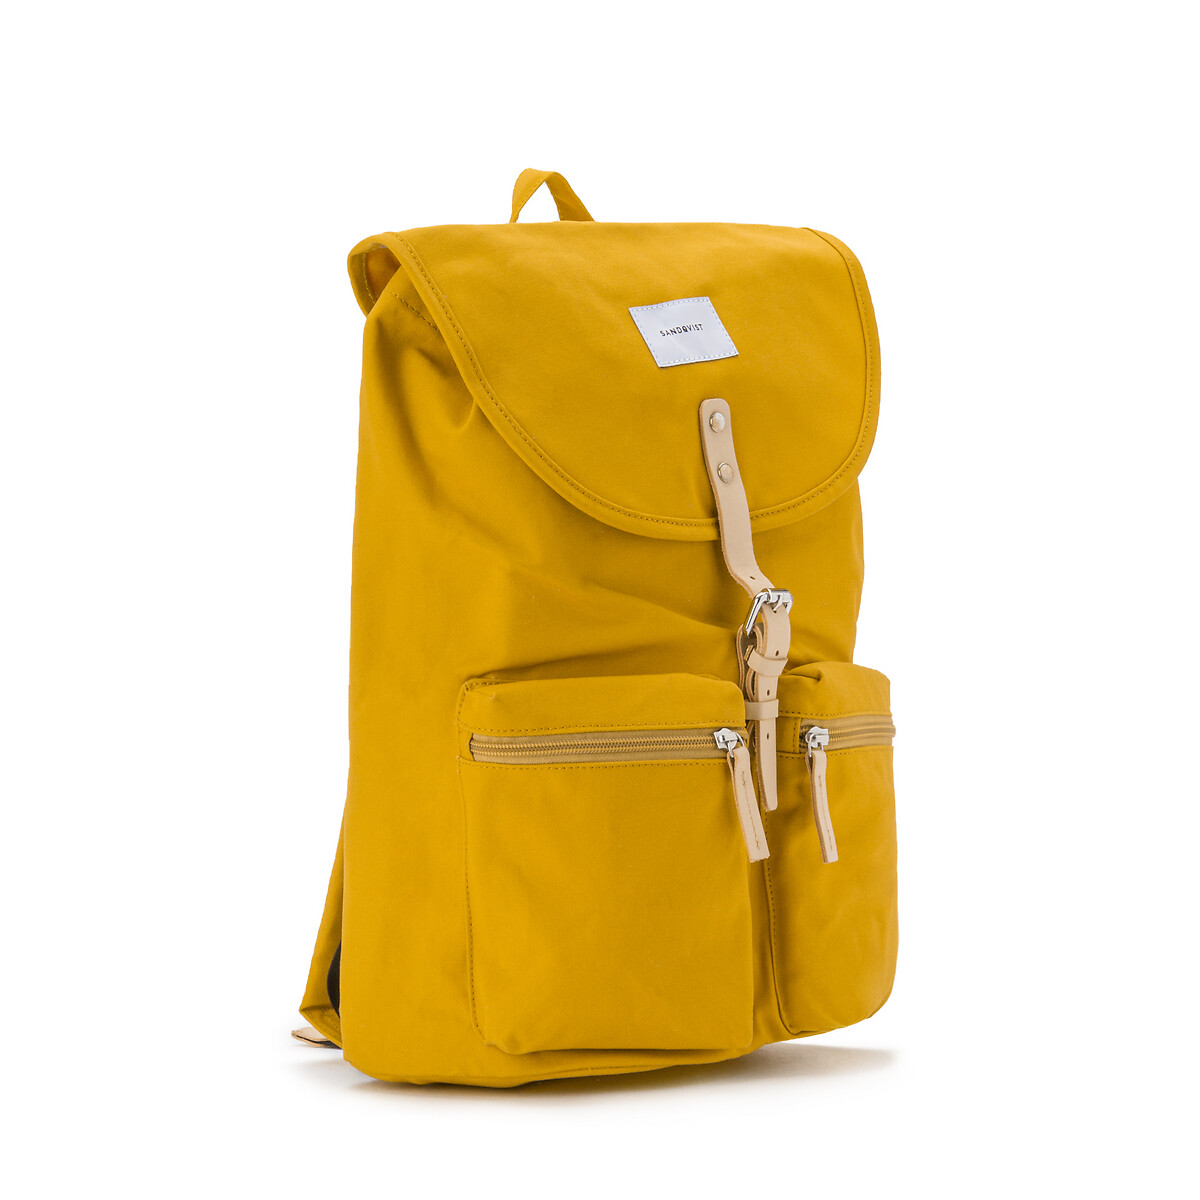 Рюкзак La Redoute ROALD л для планшета единый размер желтый - фото 2